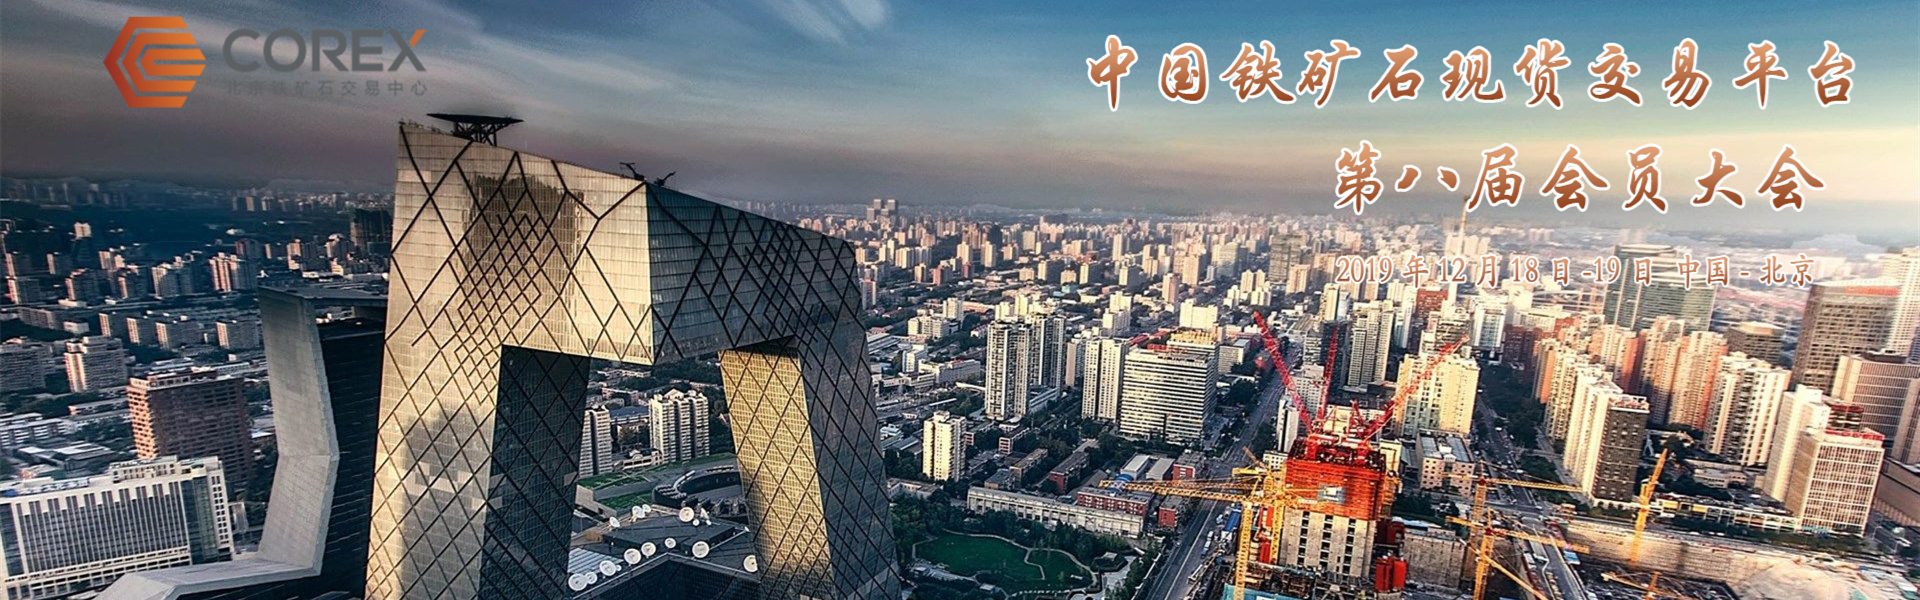 北京铁矿石交易中心2019年会员大会